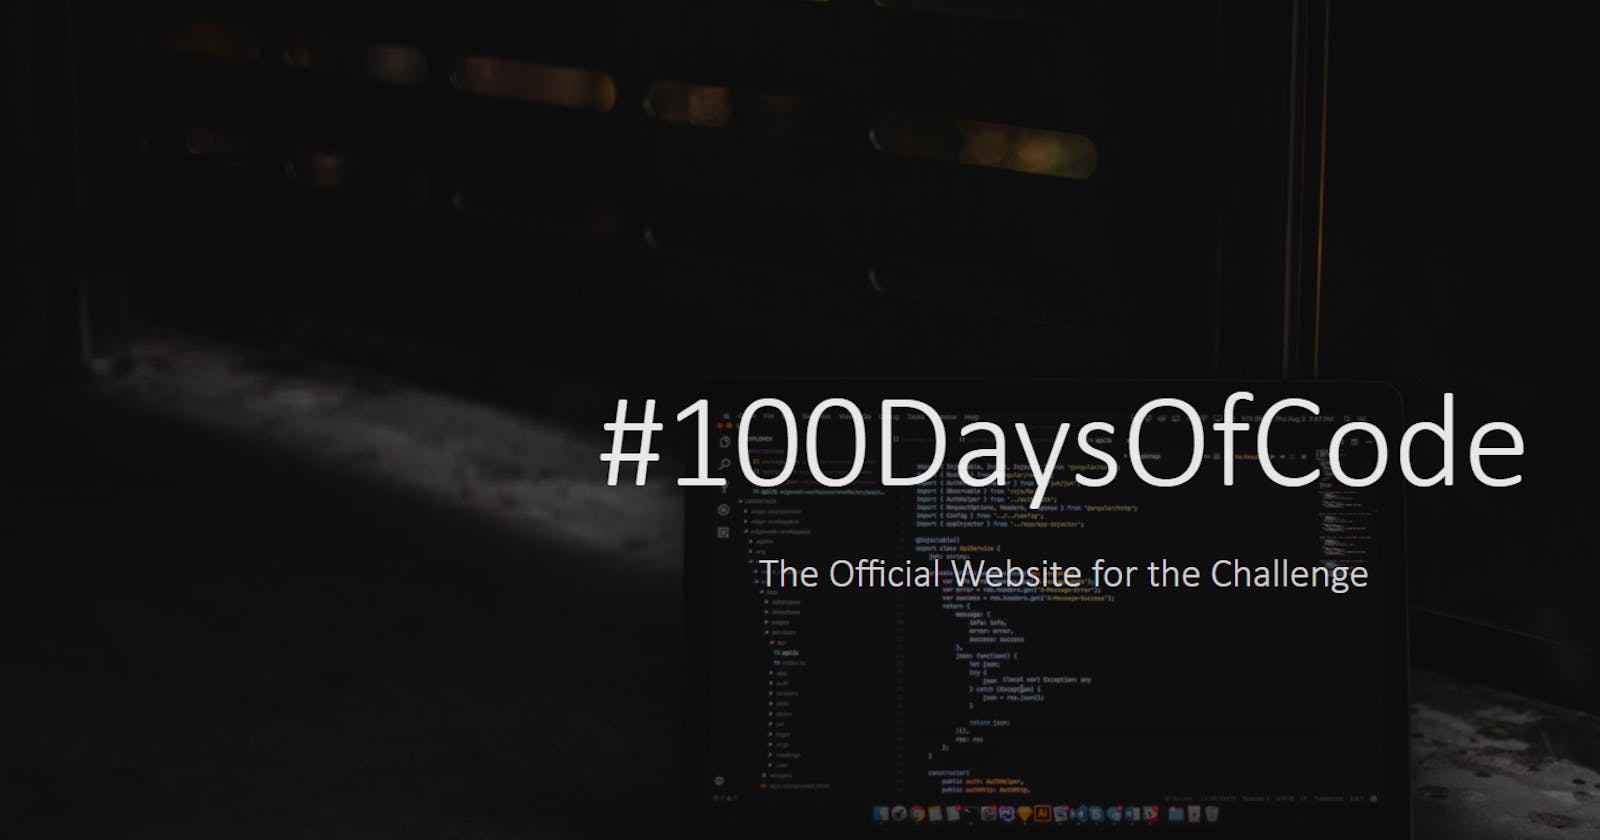 Why do #100DaysOfCode?